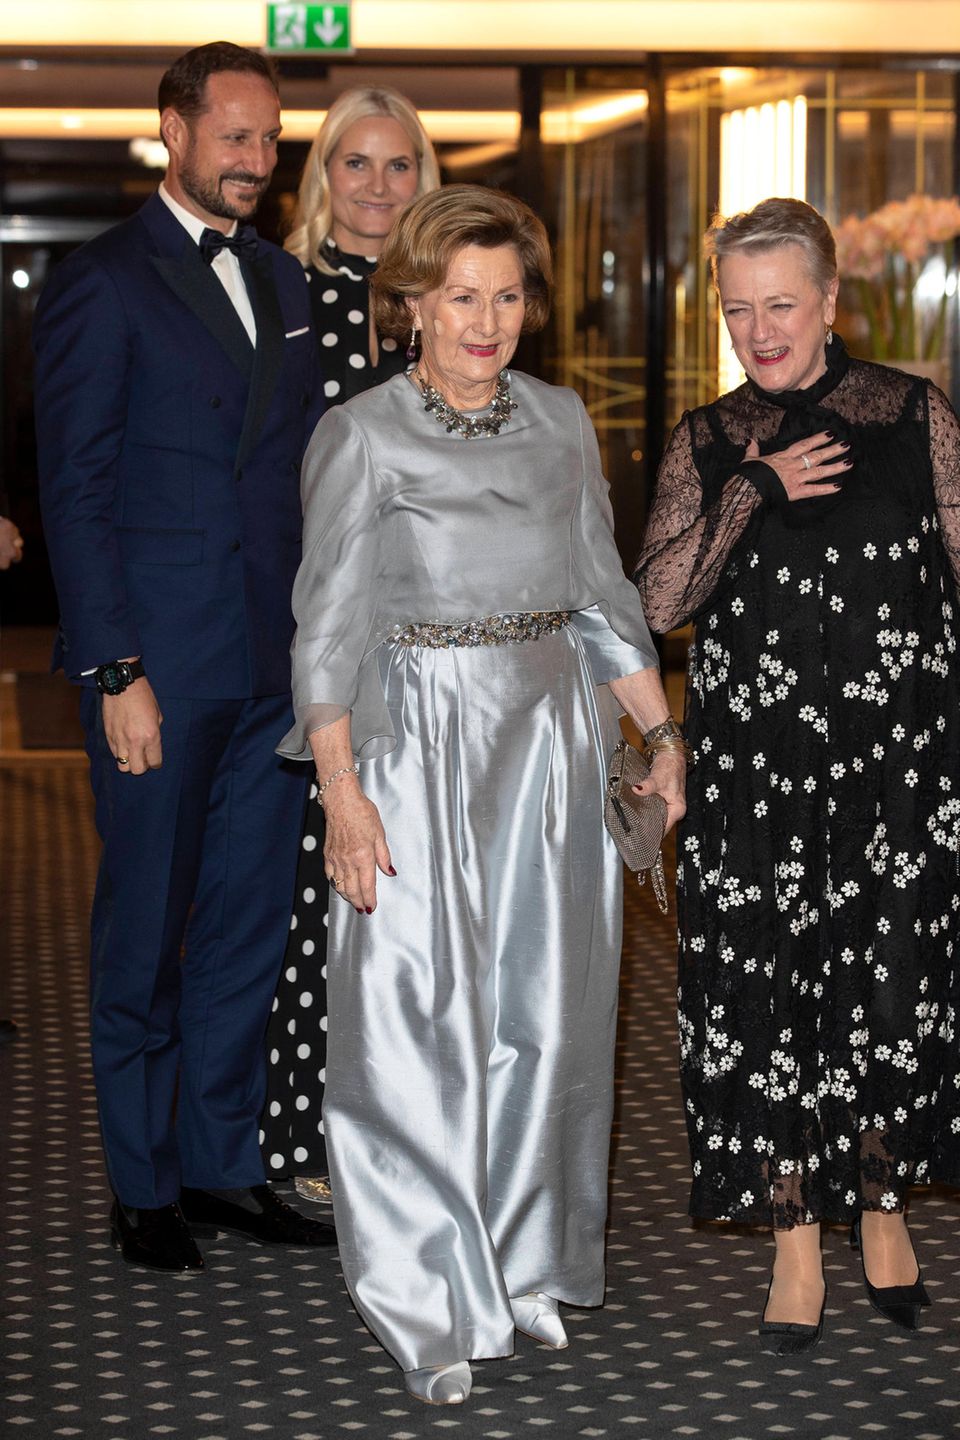 Königin Sonja glänzt von Kopf bis Fuß im silbernen Metallic-Look.